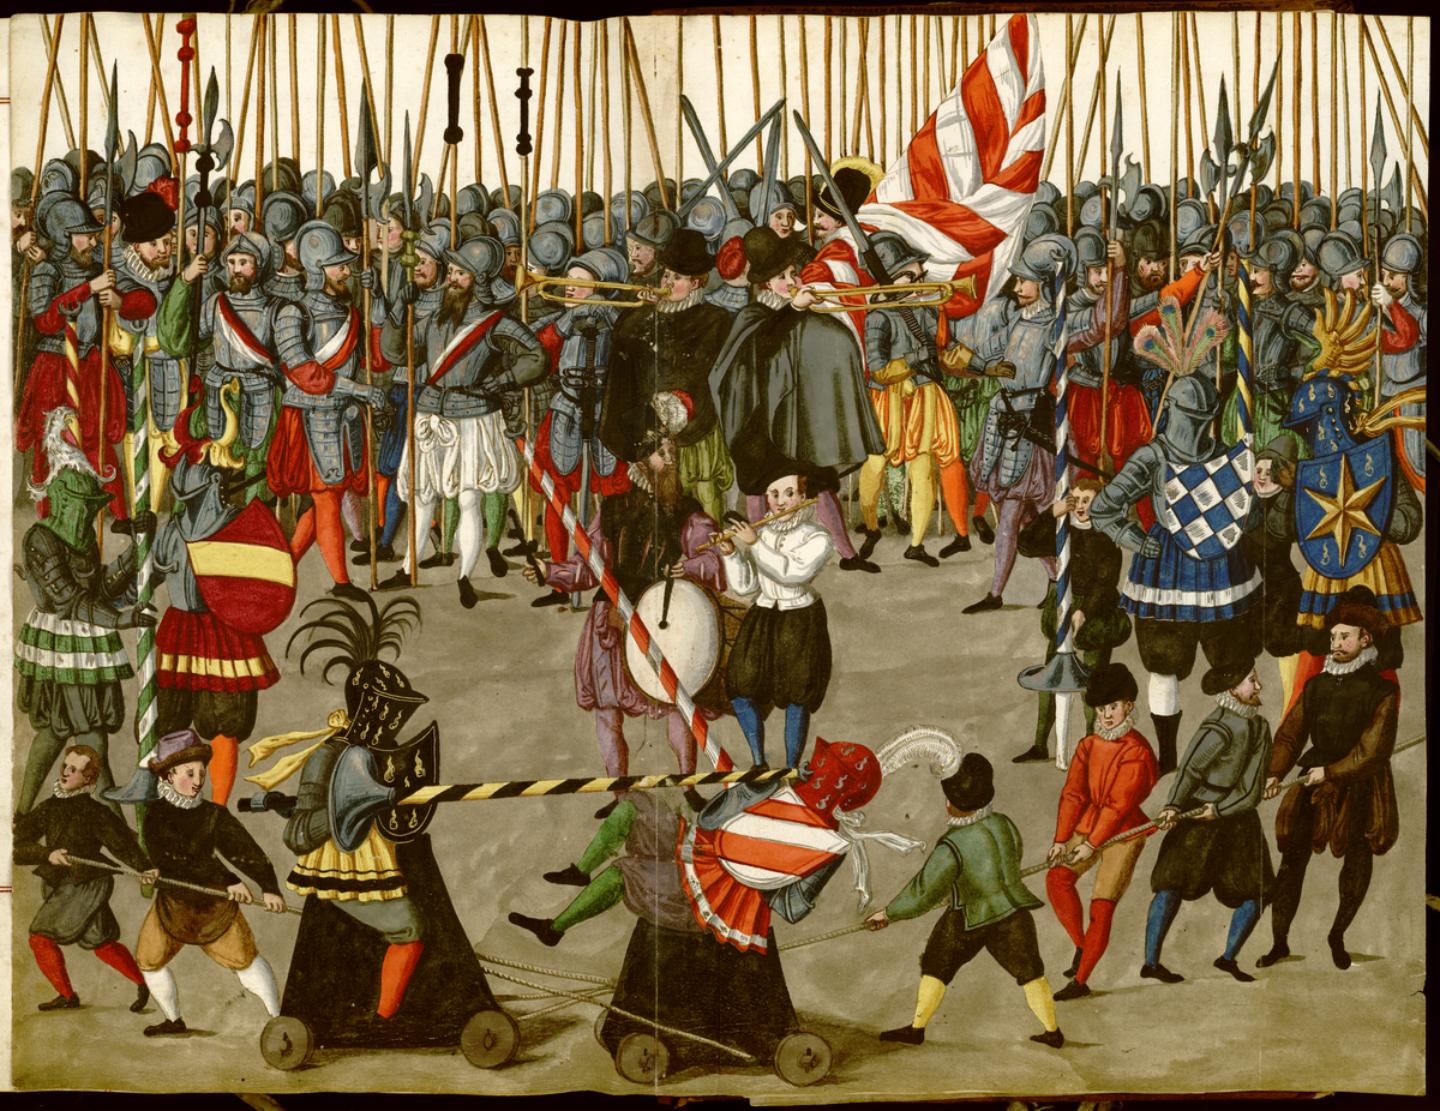 Torneo Carnaval de Nuremberg. 1600.